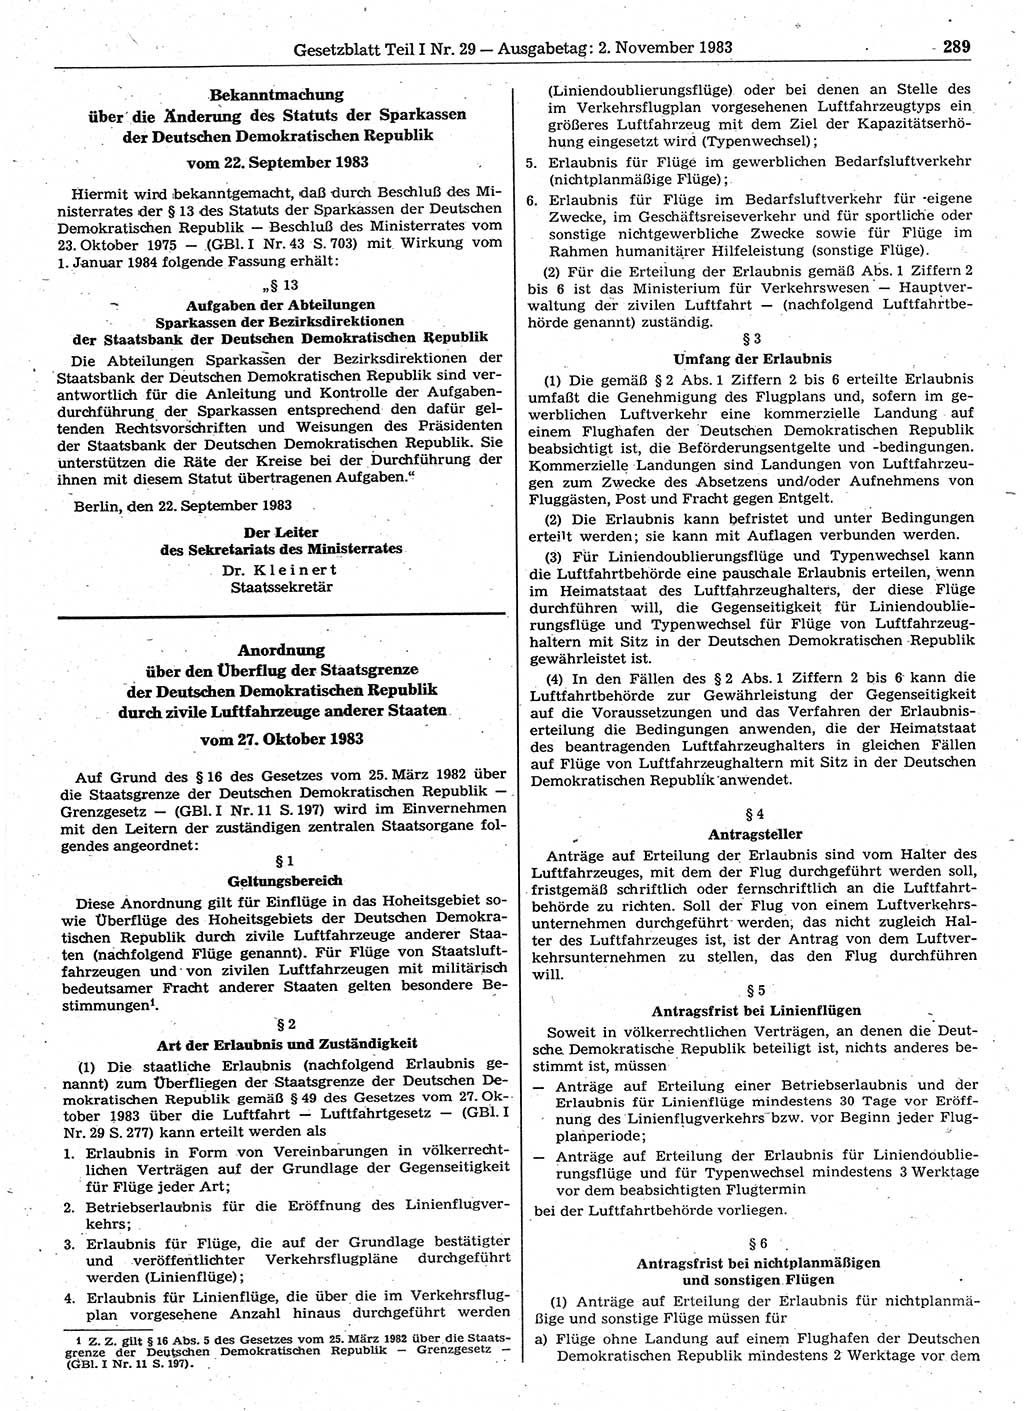 Gesetzblatt (GBl.) der Deutschen Demokratischen Republik (DDR) Teil Ⅰ 1983, Seite 289 (GBl. DDR Ⅰ 1983, S. 289)